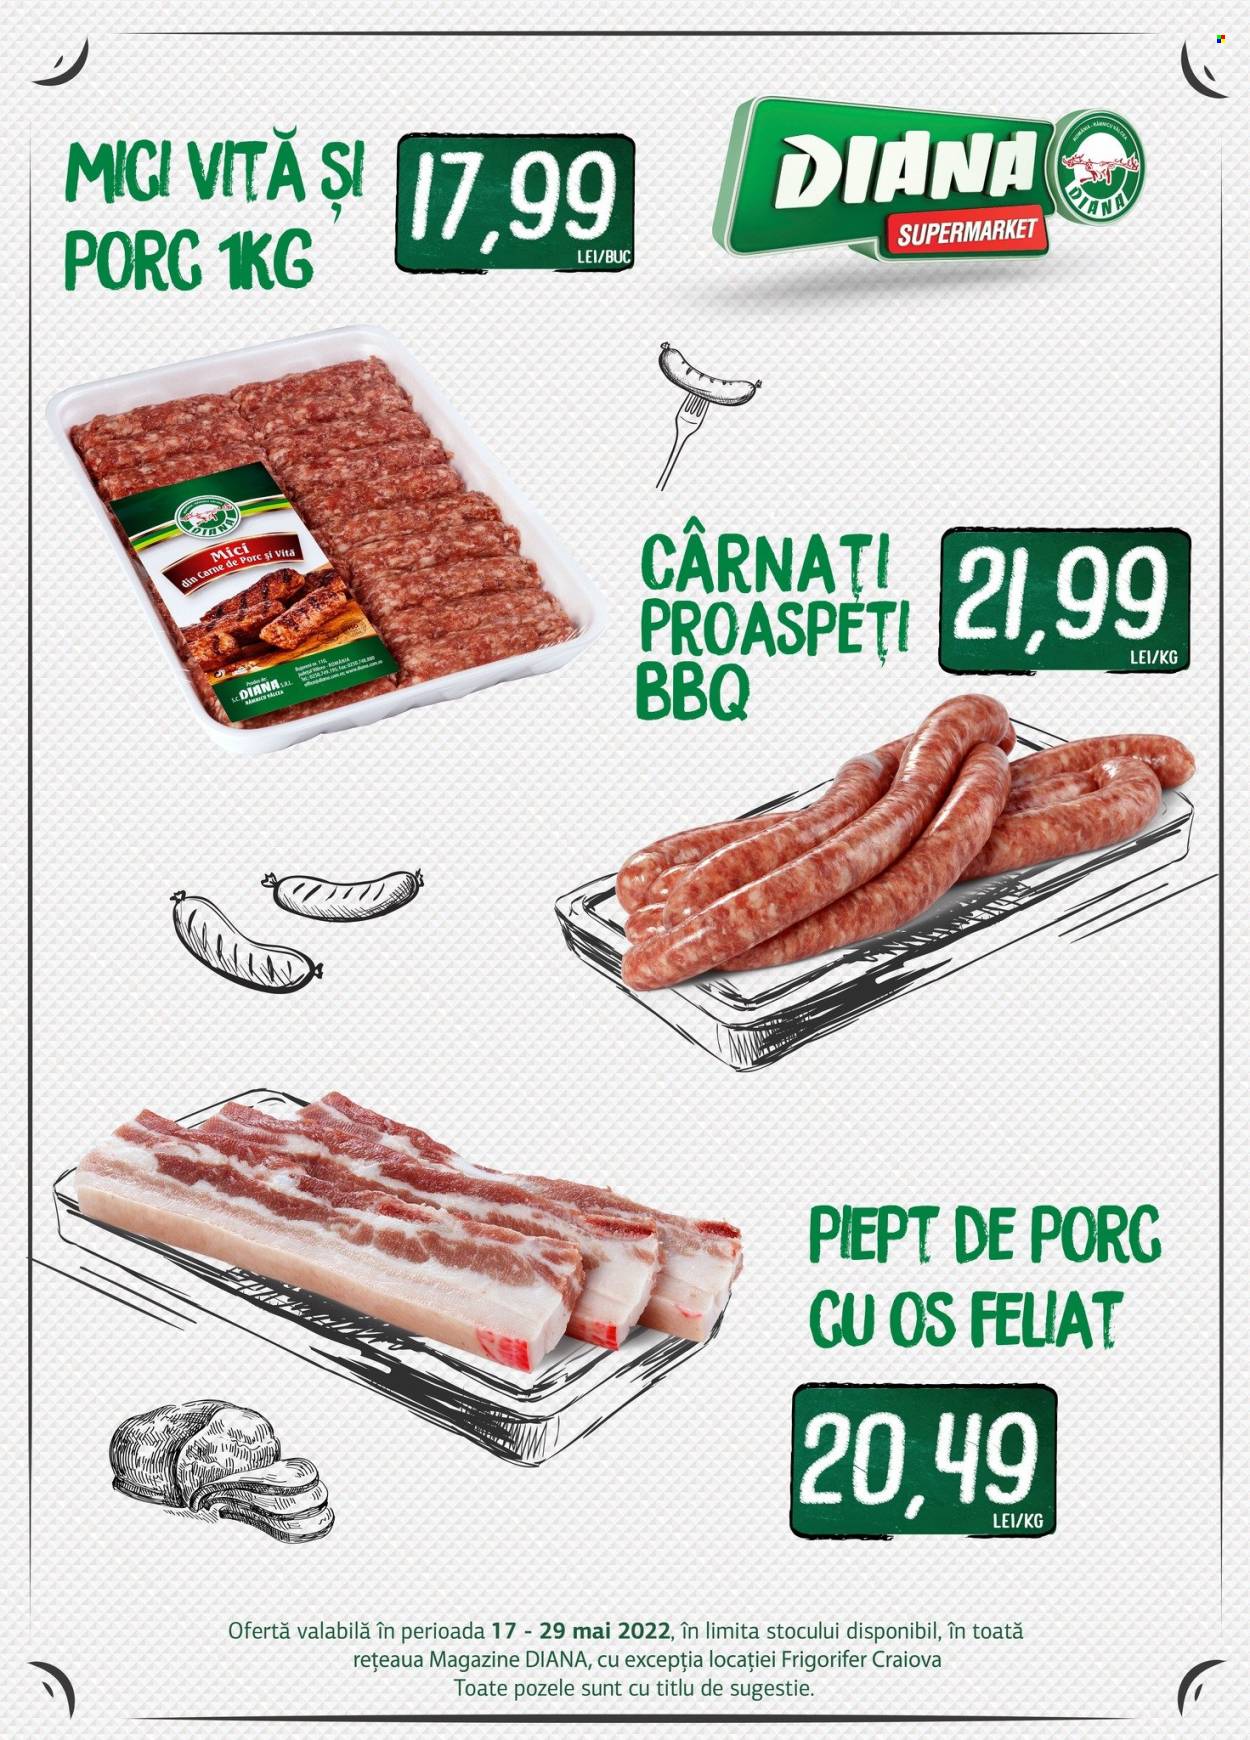 thumbnail - Cataloage Diana supermarket - 17.05.2022 - 29.05.2022 - Produse în vânzare - mici de porc, piept de porc, cârnaţi. Pagina 1.